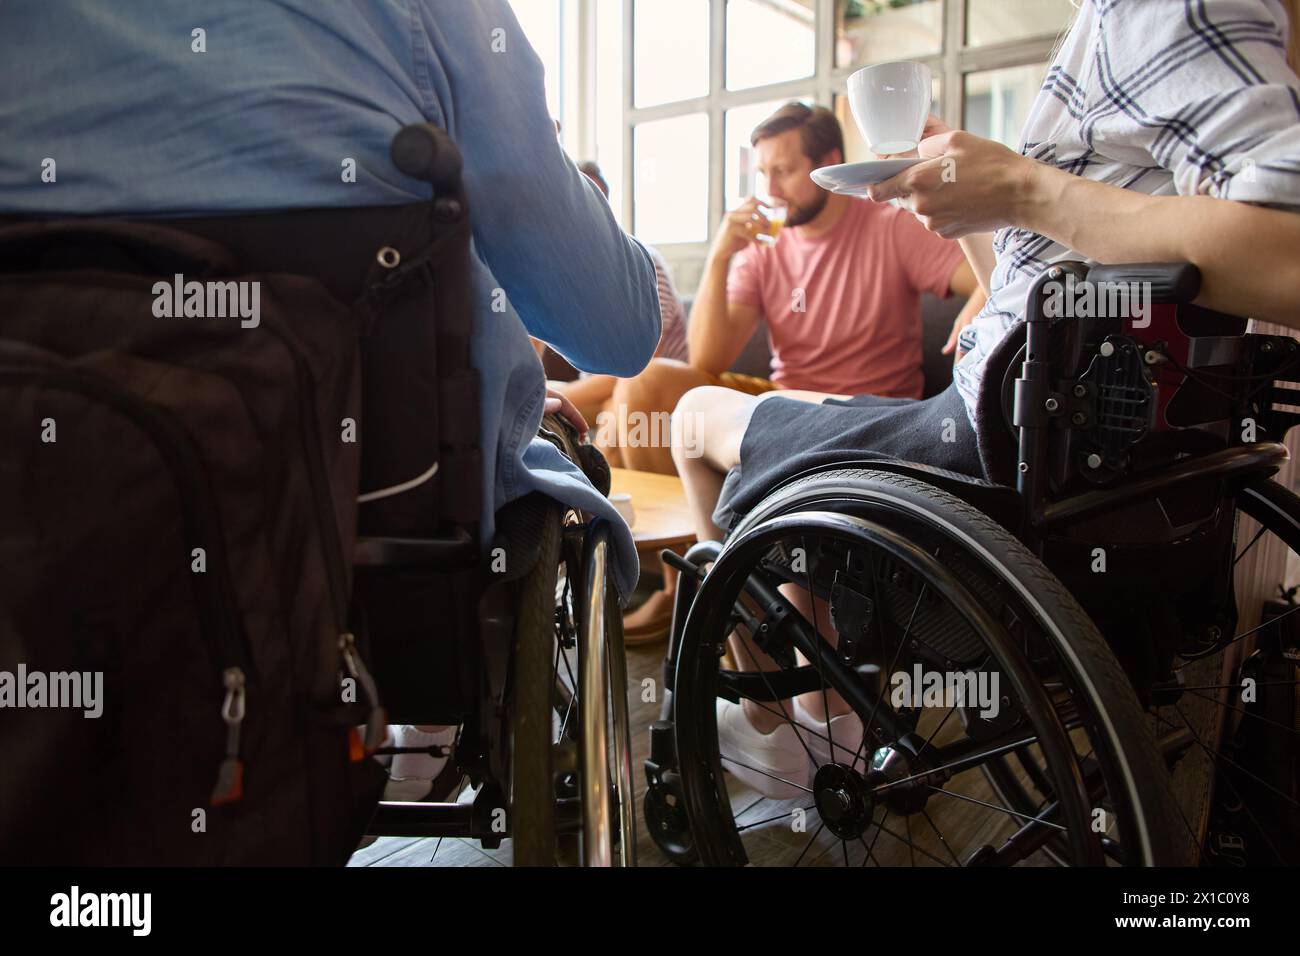 Ein zwangloses Meeting in einem cafÃ, bei dem eine Person mit Rollstuhl einen lebhaften Chat und Kaffee mit Freunden genießt. Stockfoto